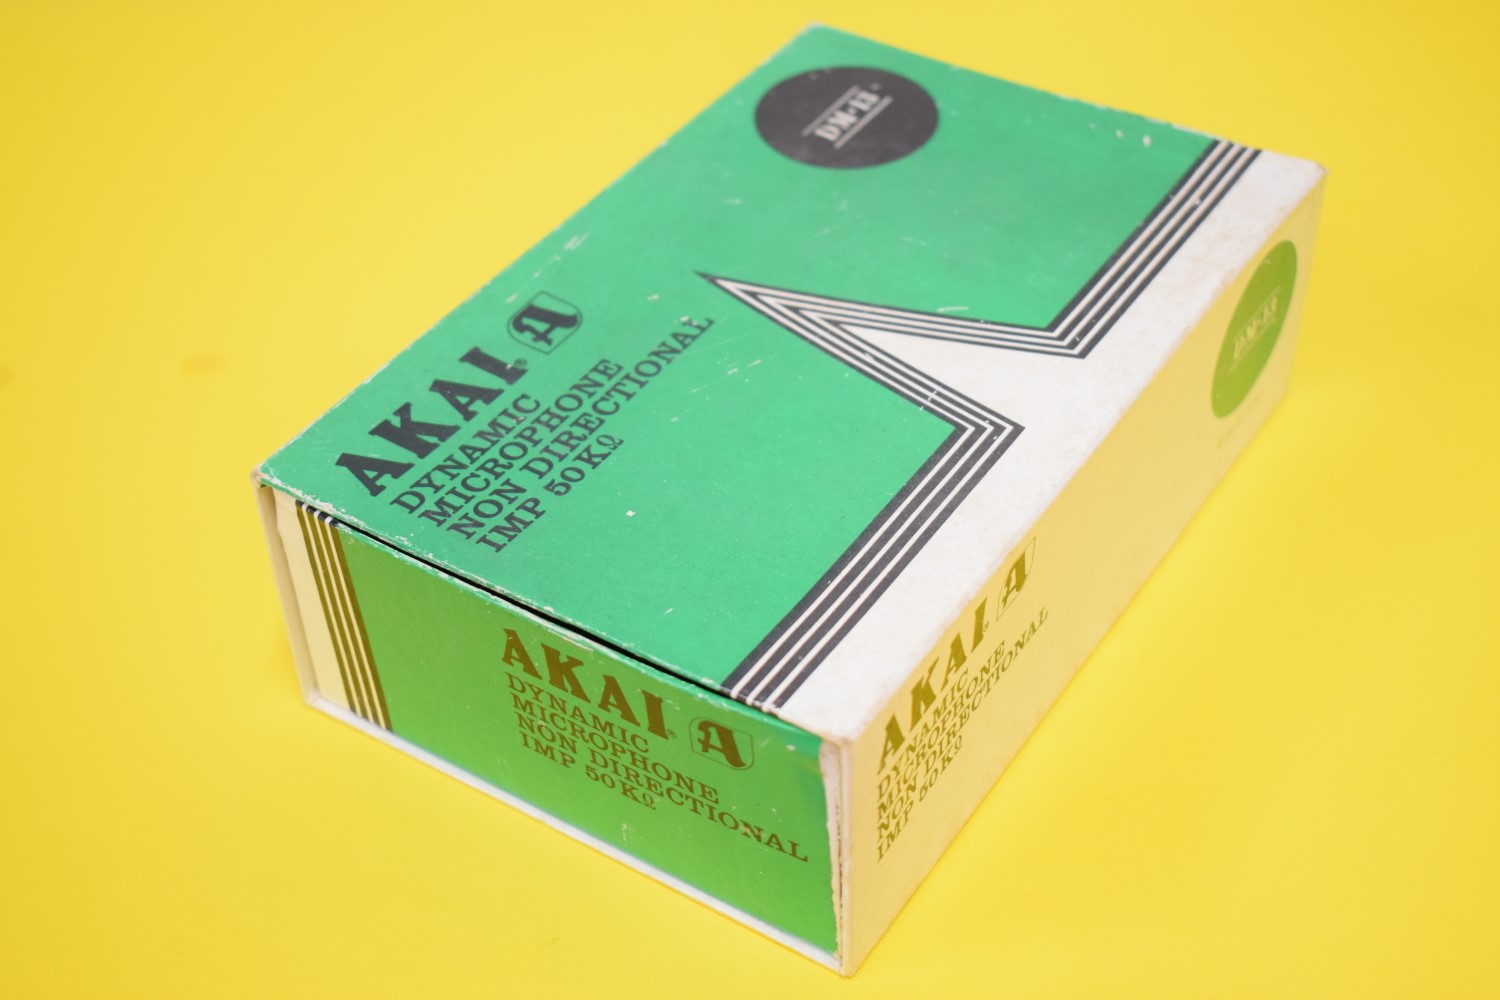 Akai DM-13 Microphone – In original Box